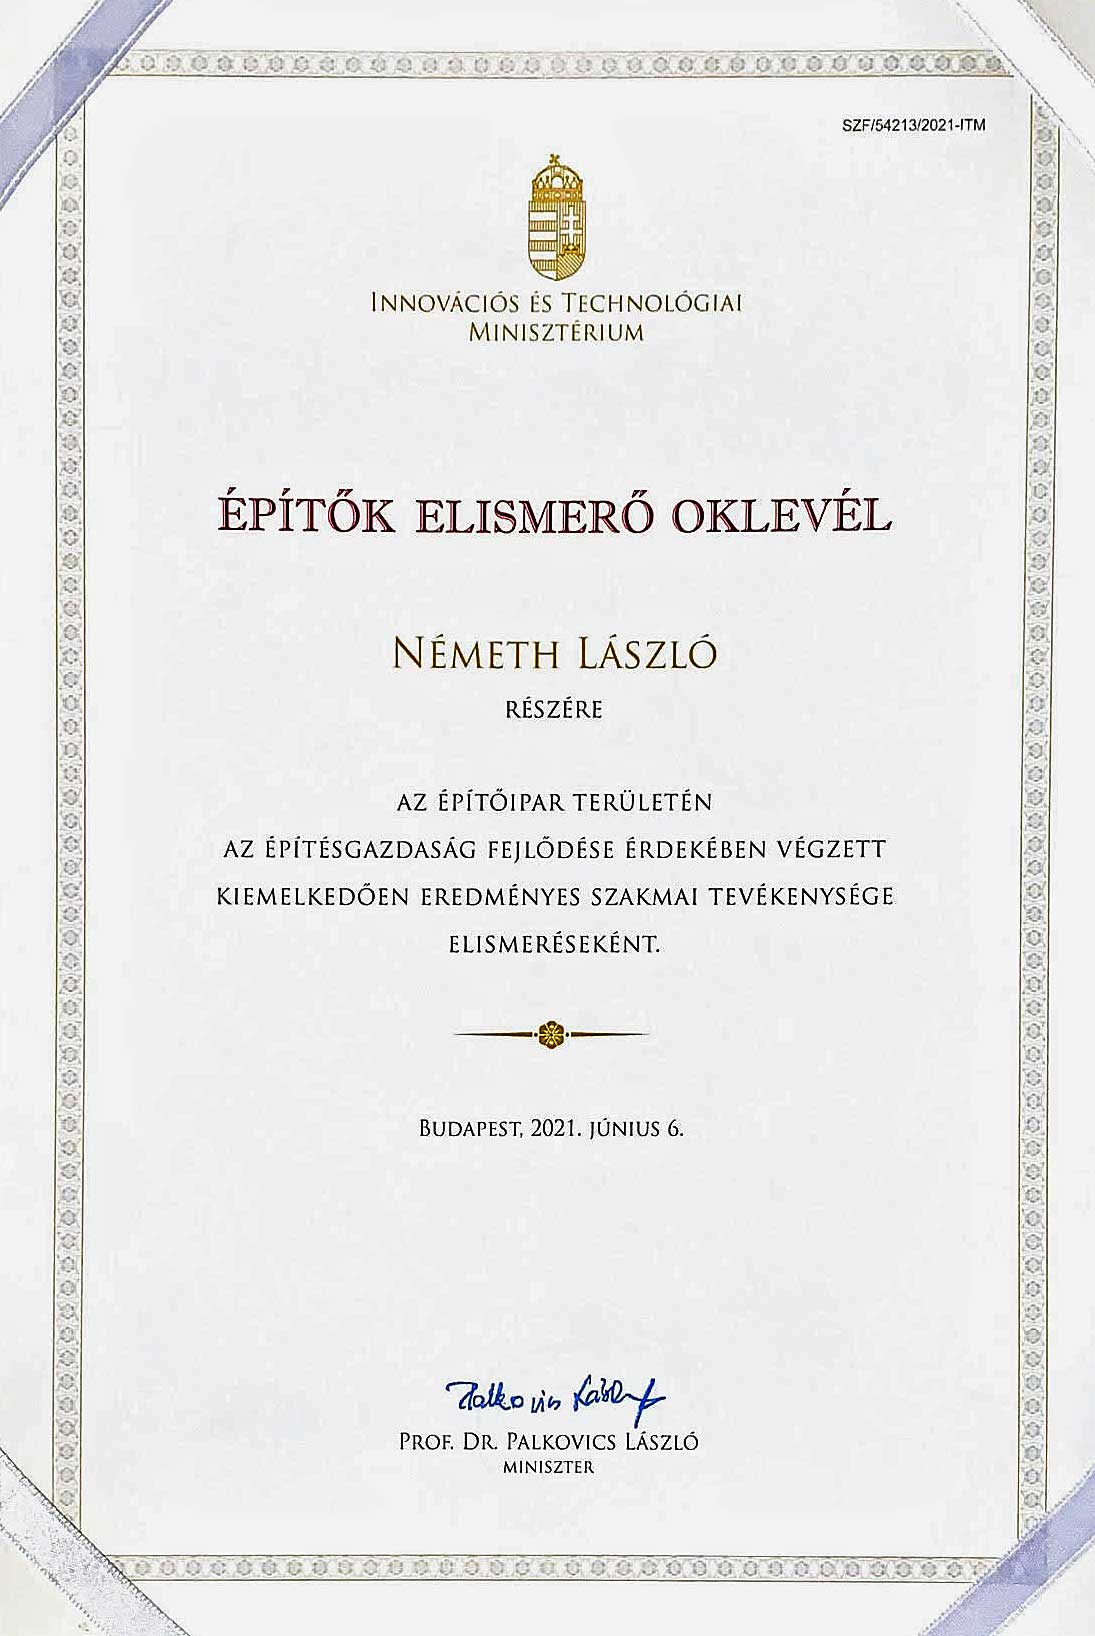 epitok-elismero-oklevel-2021-nemeth-laszlo-ensi